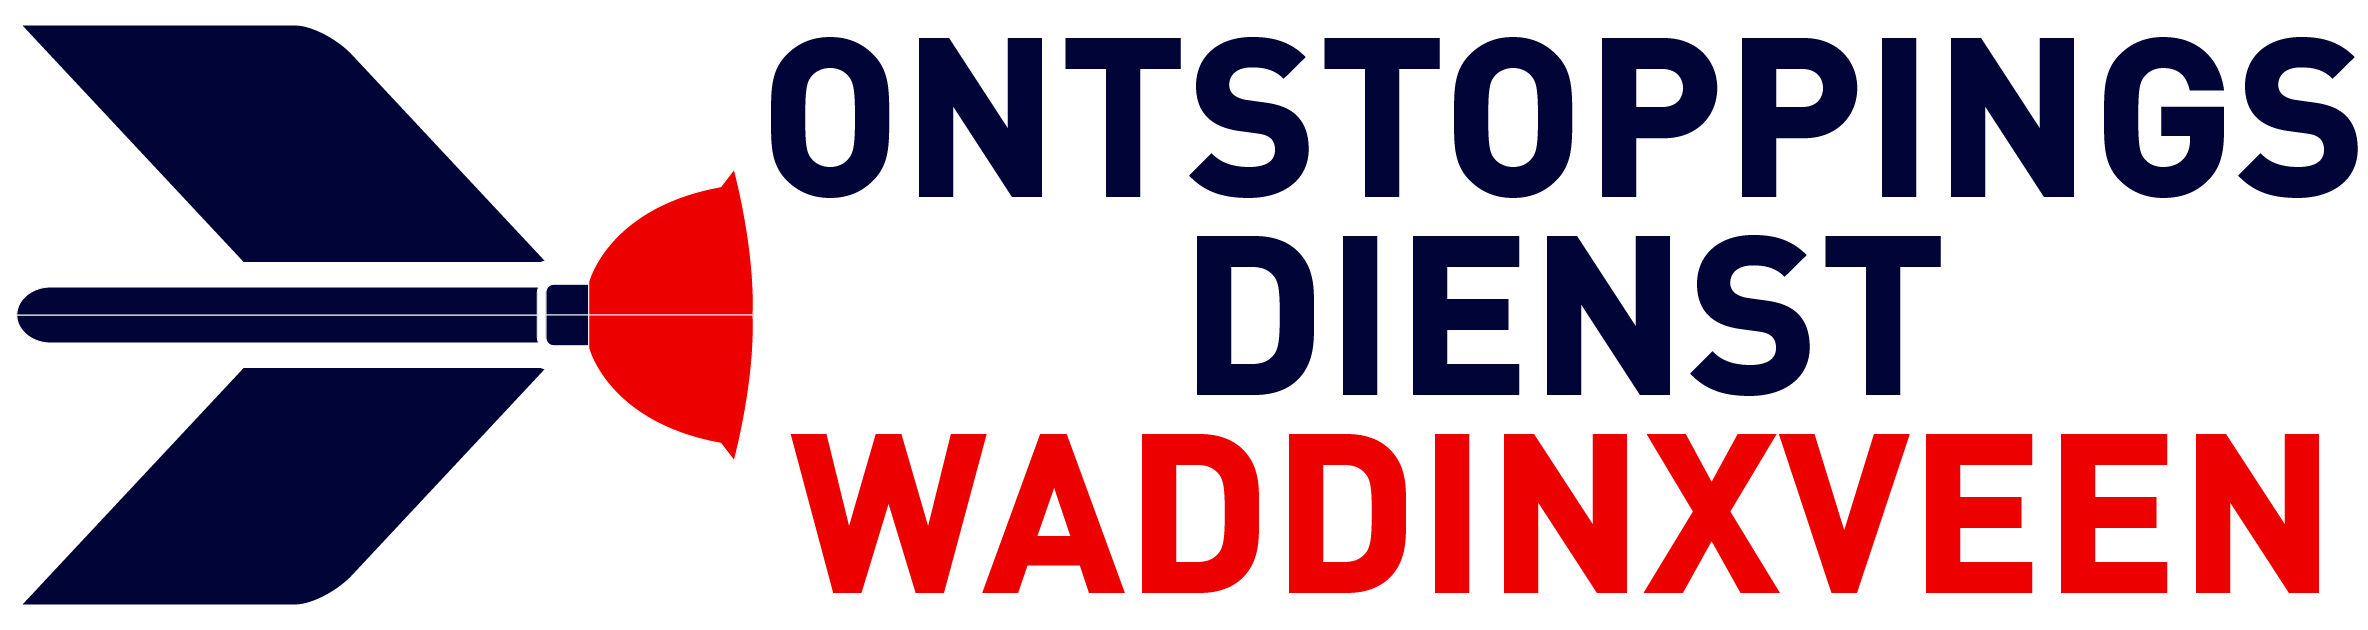 Ontstoppingsdienst Waddinxveen logo